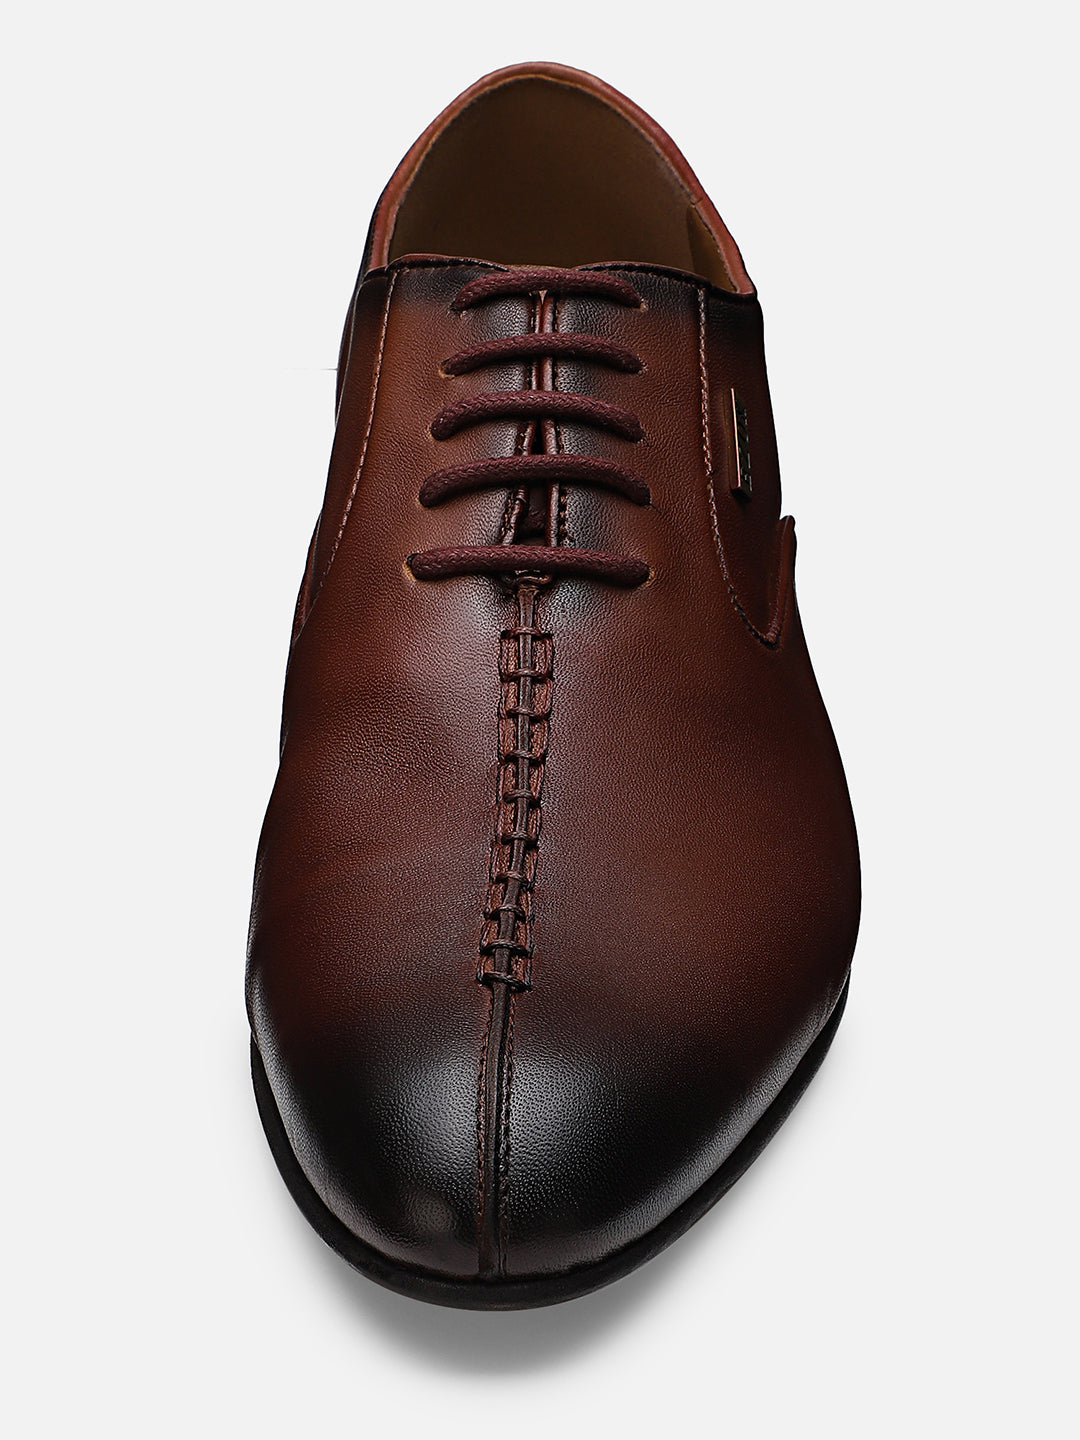 Ezok Men Bordo Leather Formal Shoes